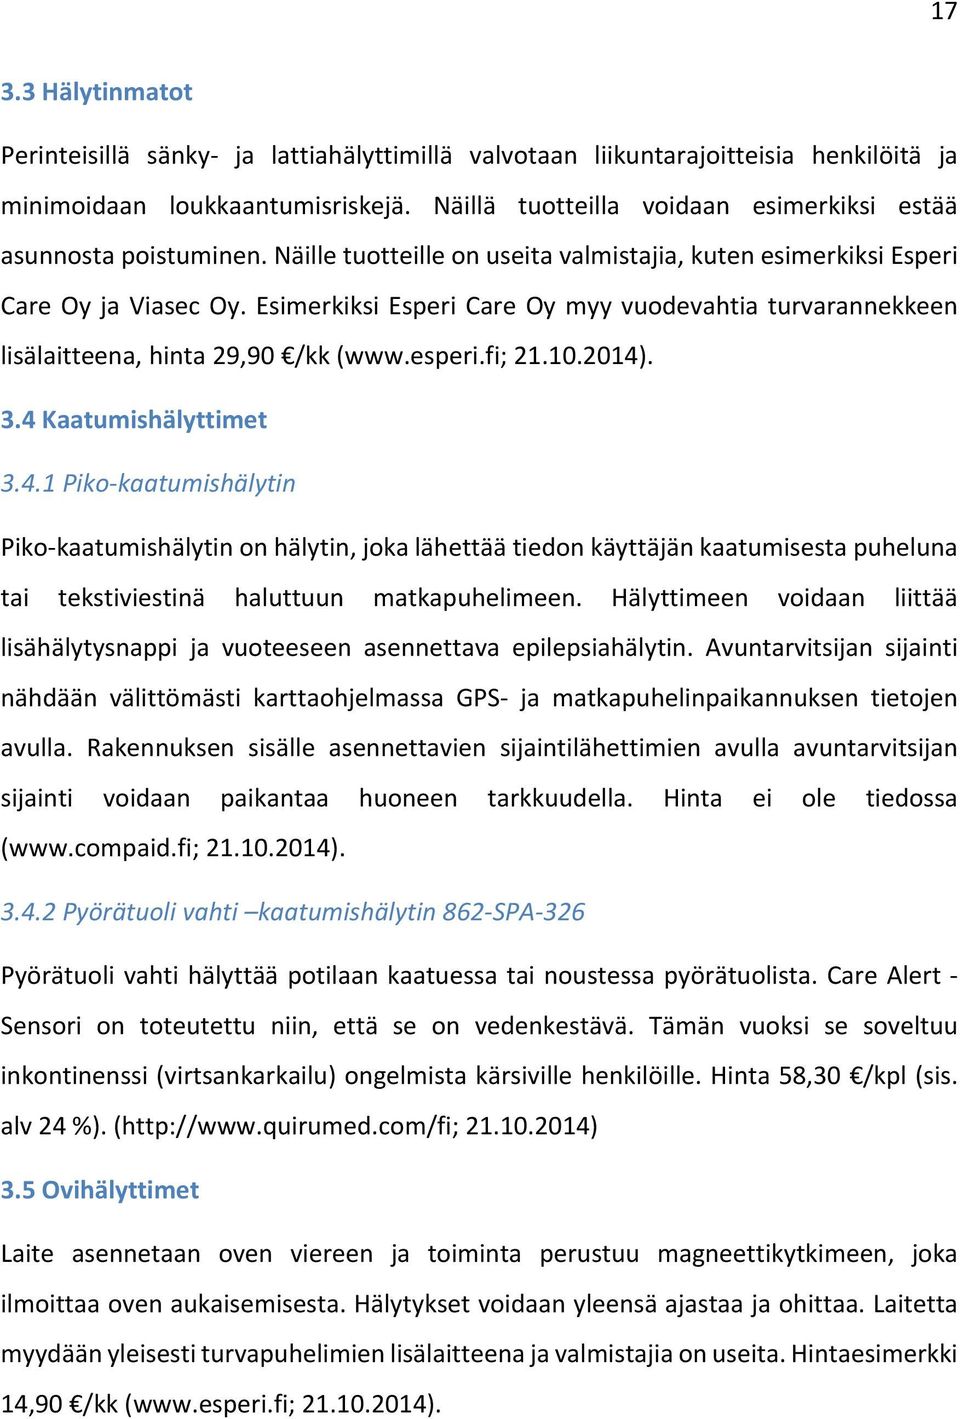 Esimerkiksi Esperi Care Oy myy vuodevahtia turvarannekkeen lisälaitteena, hinta 29,90 /kk (www.esperi.fi; 21.10.2014)